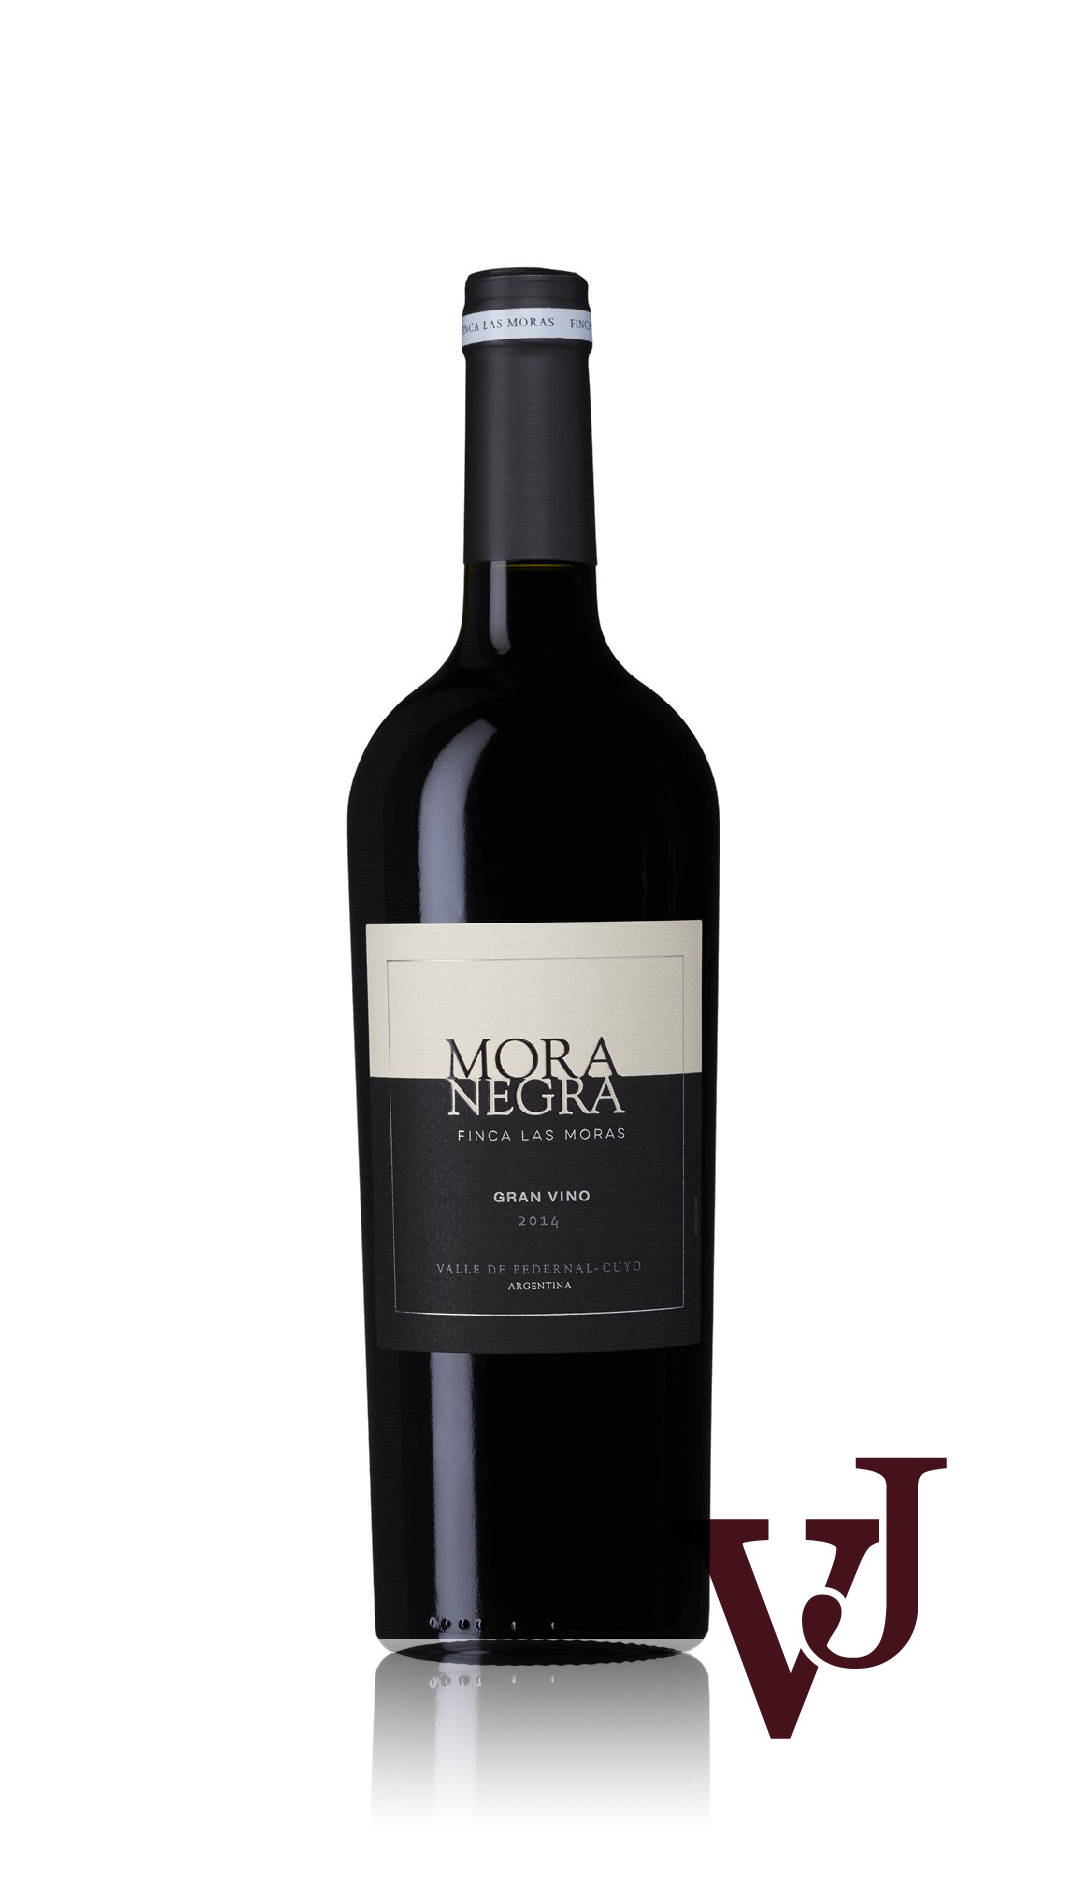 Rött Vin - Mora Negra artikel nummer 7227801 från producenten Finca Las Moras från området Argentina